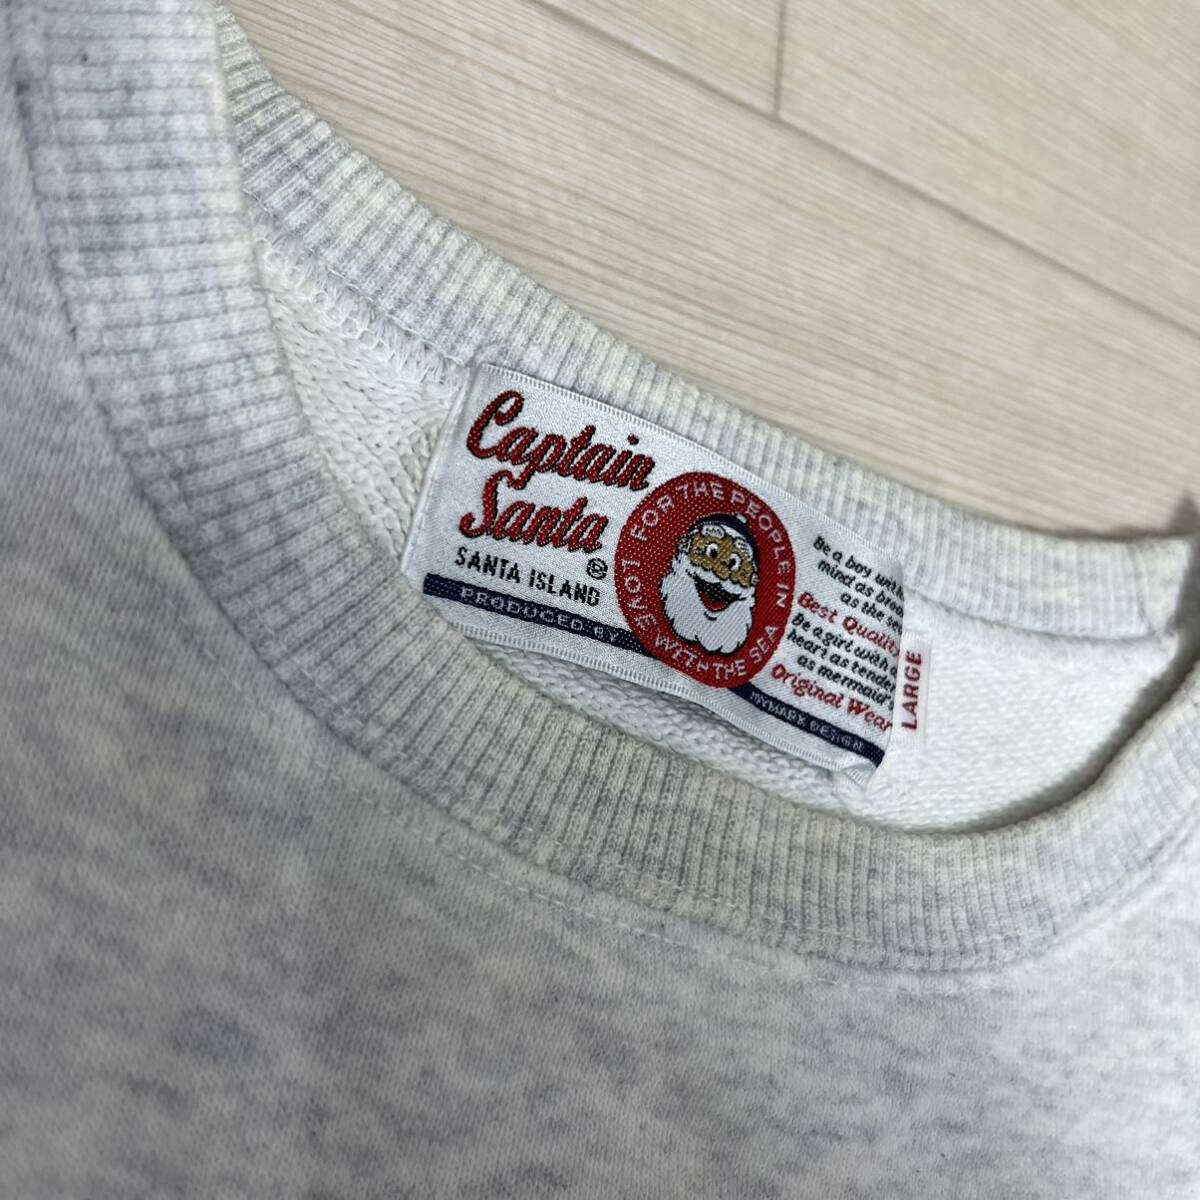 M#② CAPTAIN SANTA Captain Santa мужской тренировочный футболка белый серый L размер tops Vintage 90s б/у одежда принт 